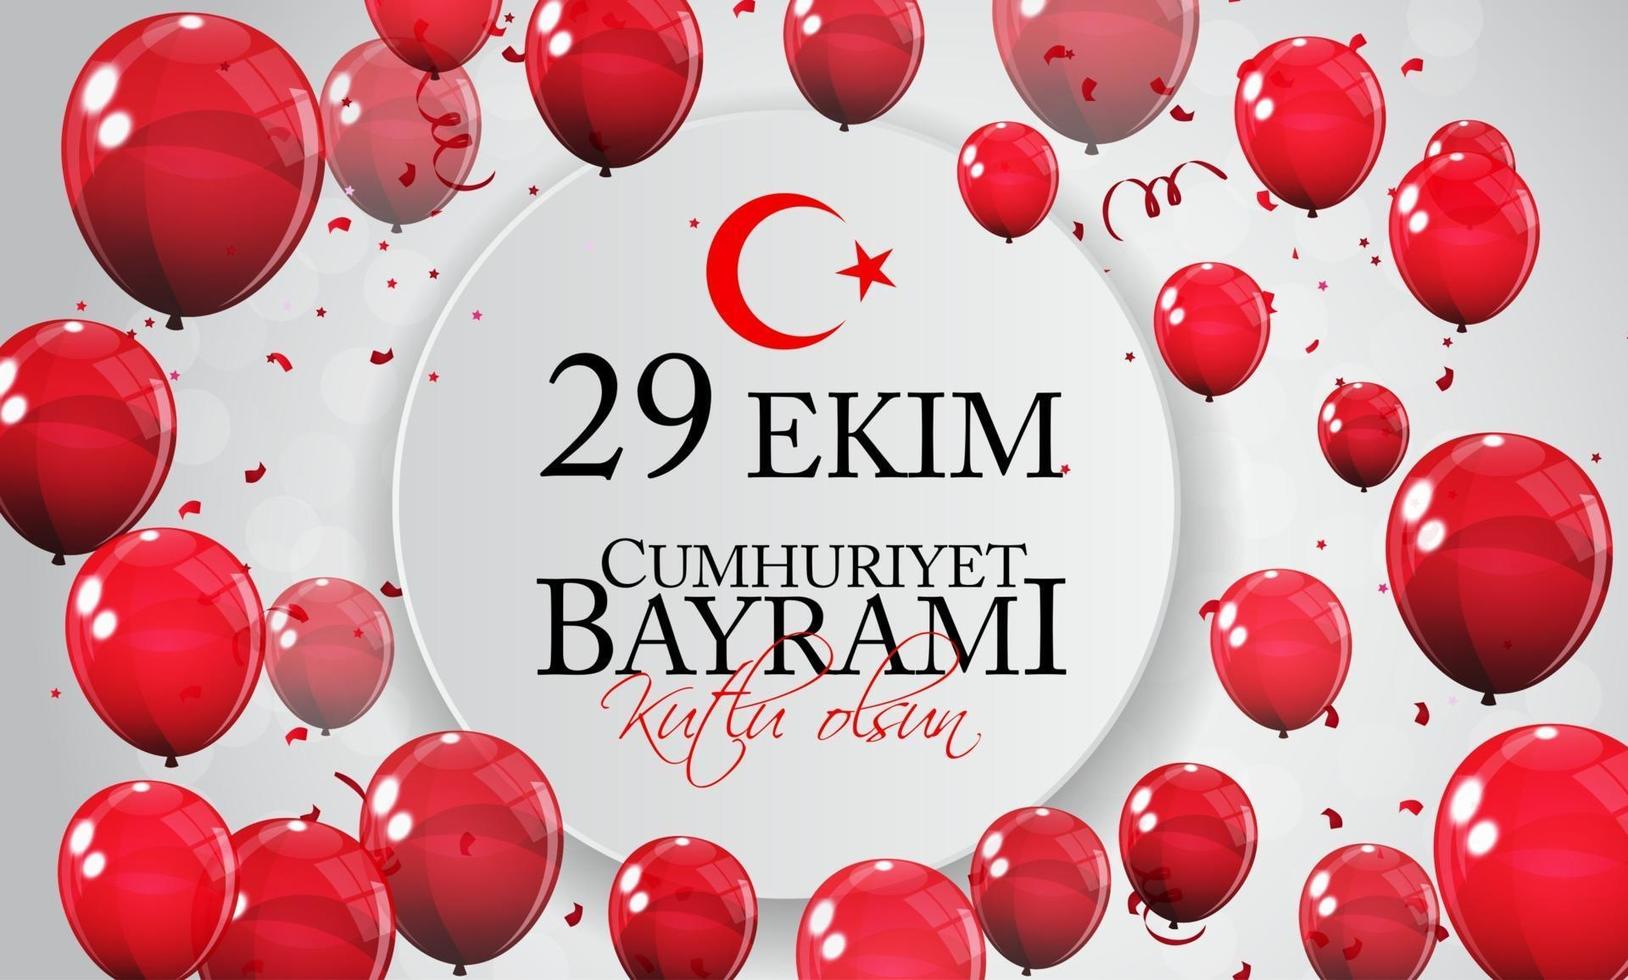 29 ekim cumhuriyet bayrami kutlu olsun. traducción 29 de octubre día de la república de turquía y el día nacional de turquía, felices fiestas vector